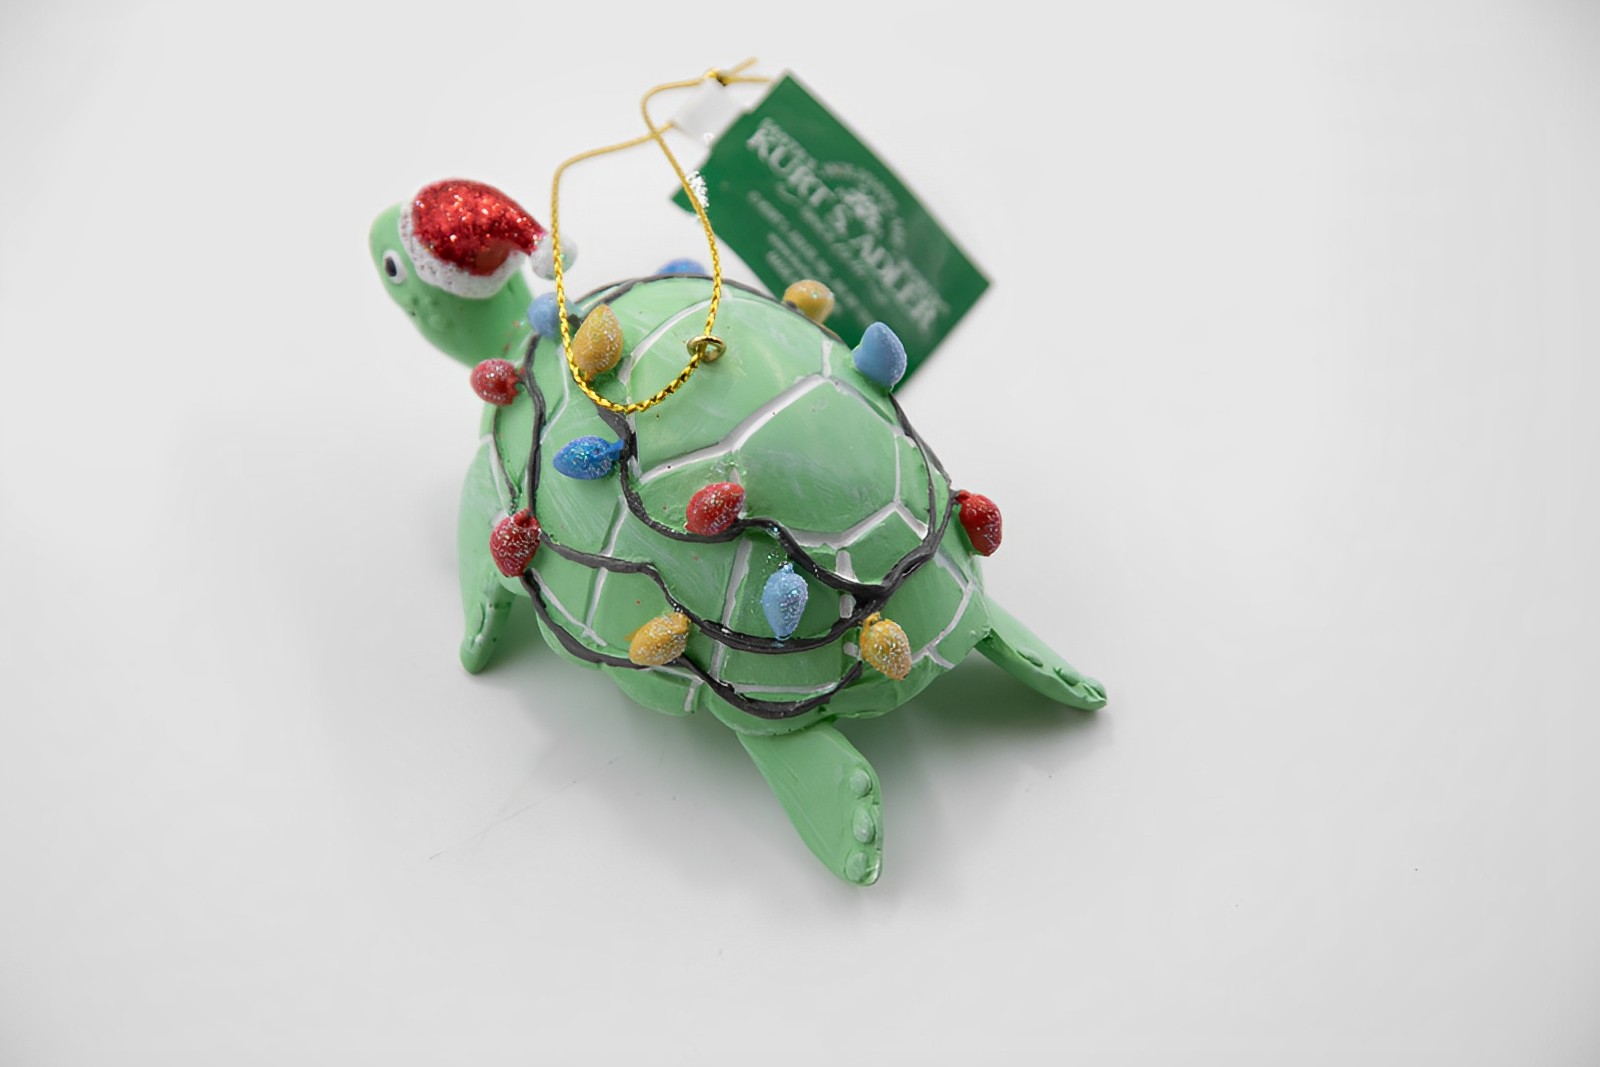 Kurt S. Adler Schildkröte mit Lichterkette Weihnachtsschmuck  